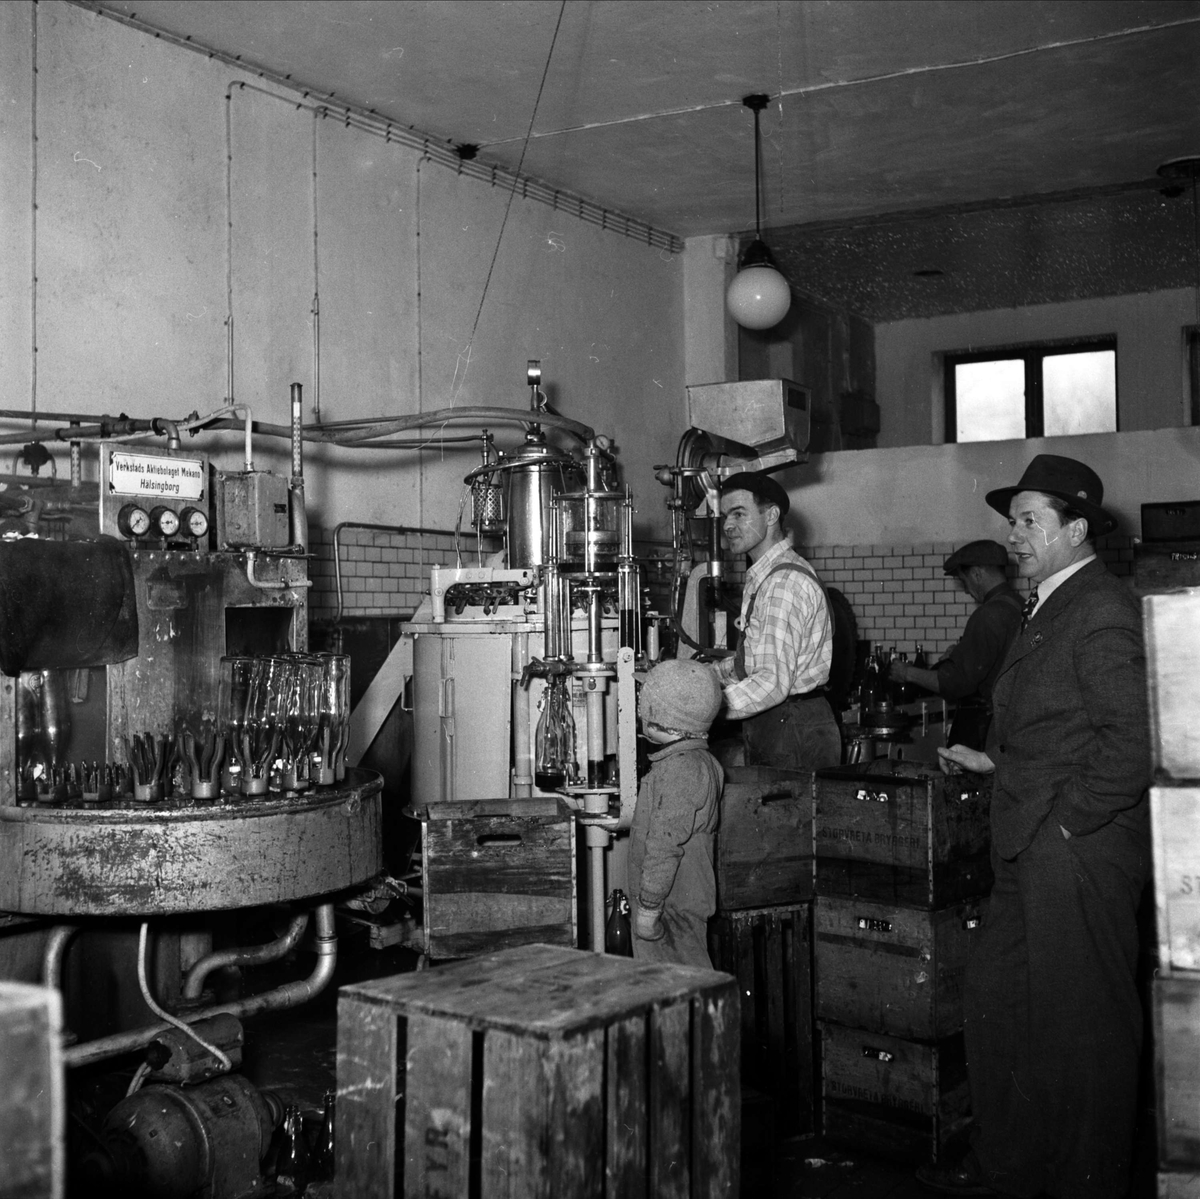 "Mejeri blev bryggeri", Storvreta Bryggeri, Rasbo, Uppland 1951